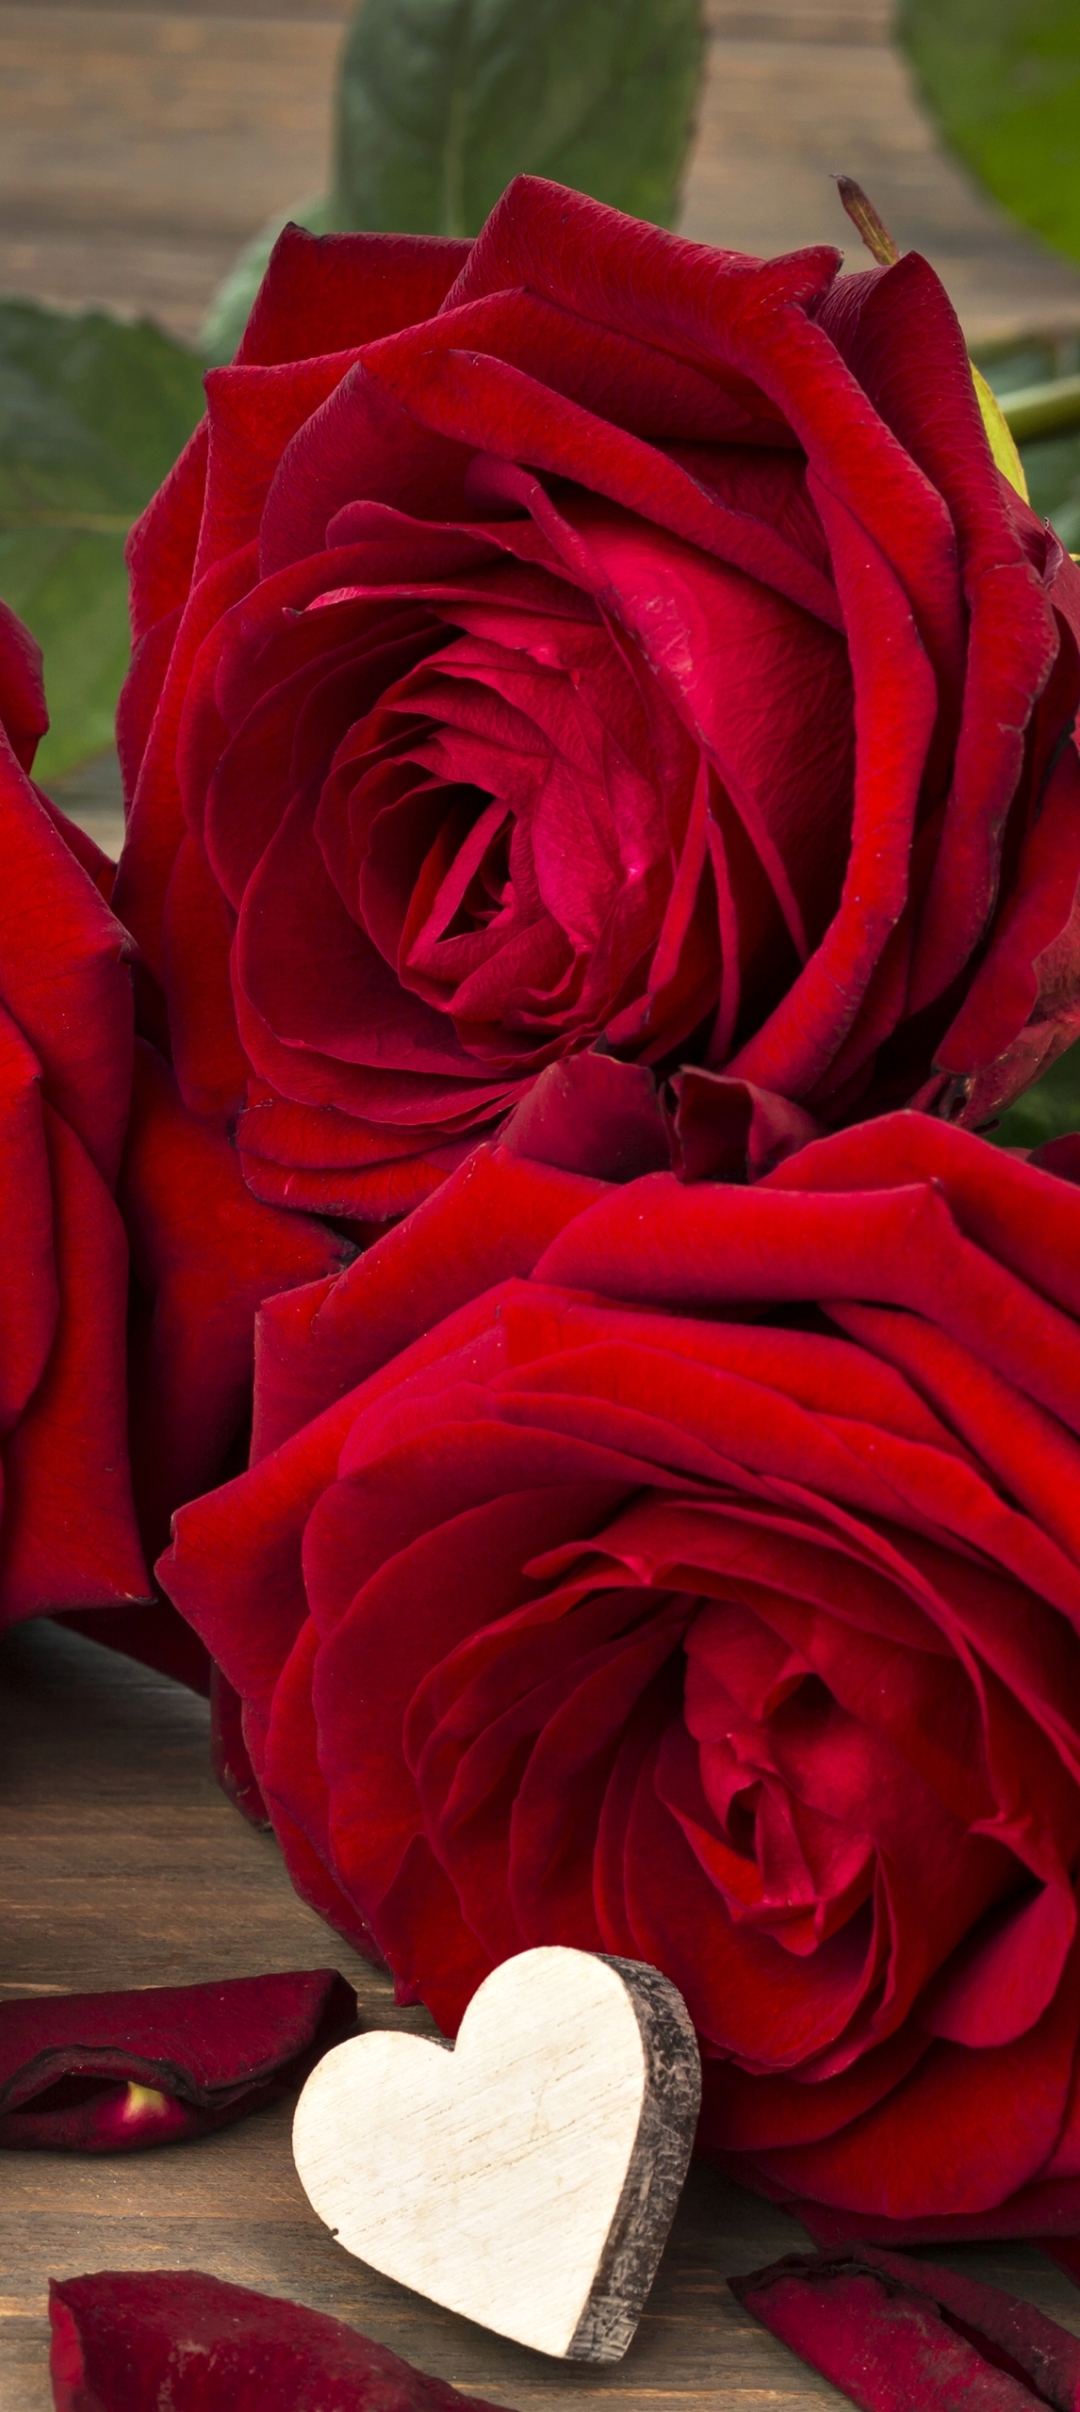 Colors Wallpaper: Beautiful Red Rose Wallpaper | Red roses, Beautiful red  roses, Beautiful roses